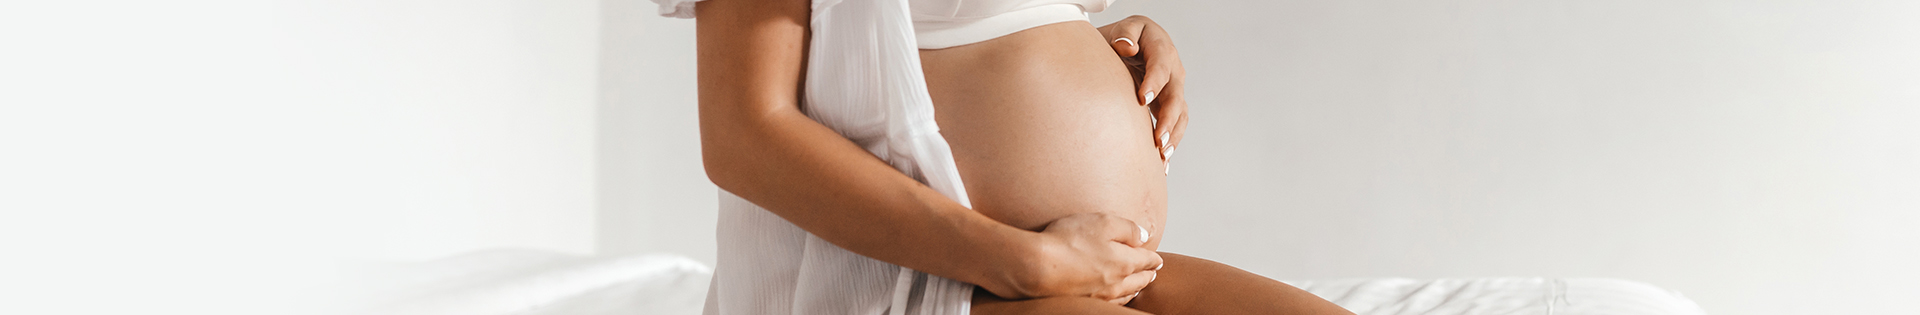 Função do ovário: veja a importância dele na fertilidade